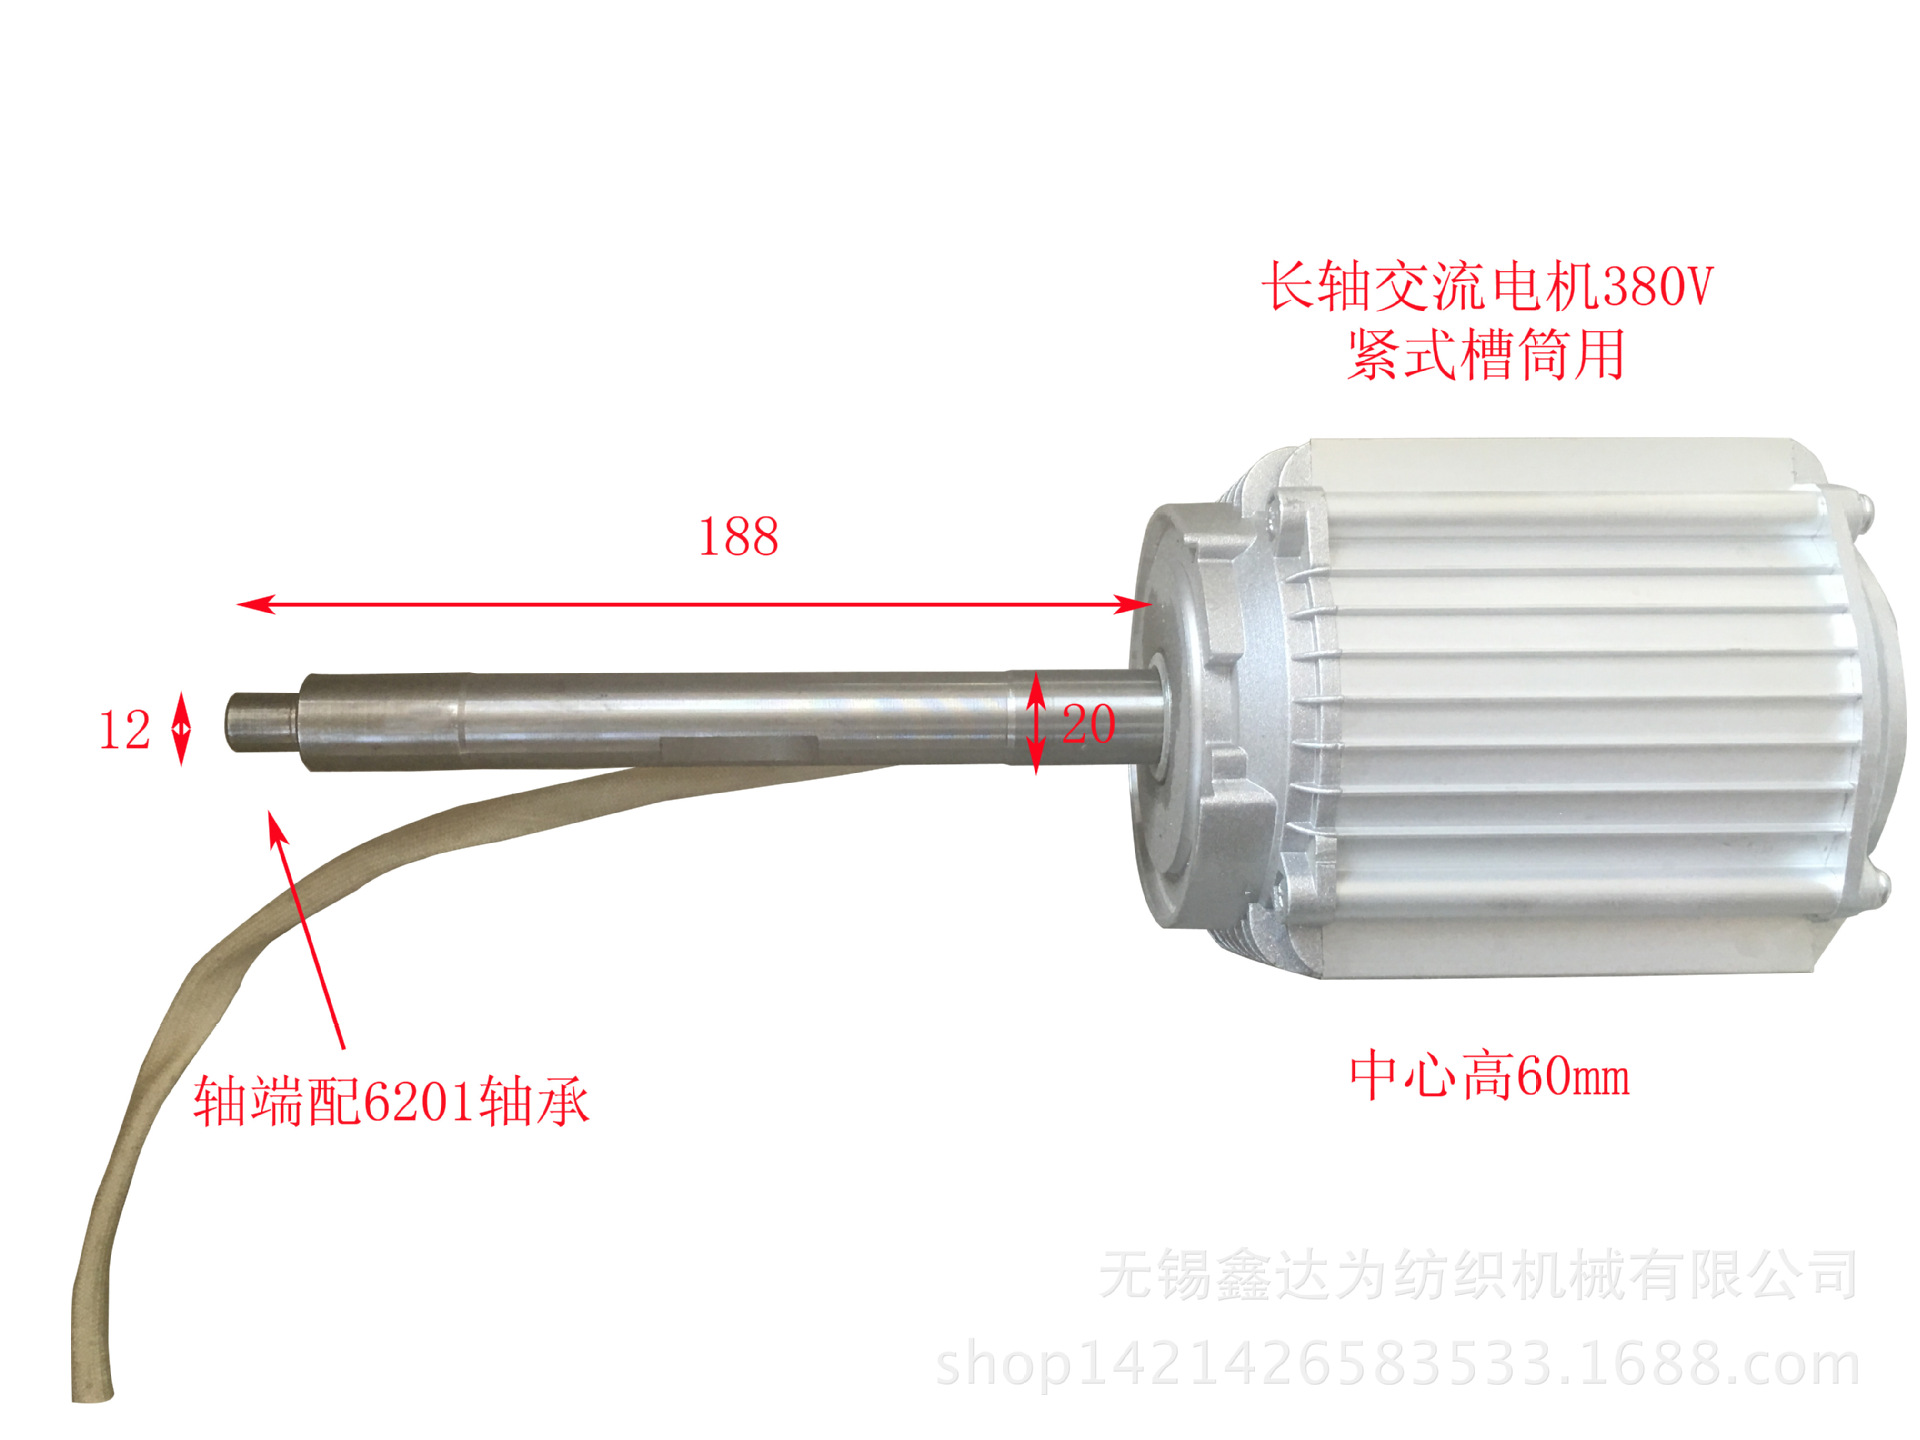 紧式槽筒电机 长轴电机 380V络筒机电机 星型接法 高速使用时间长